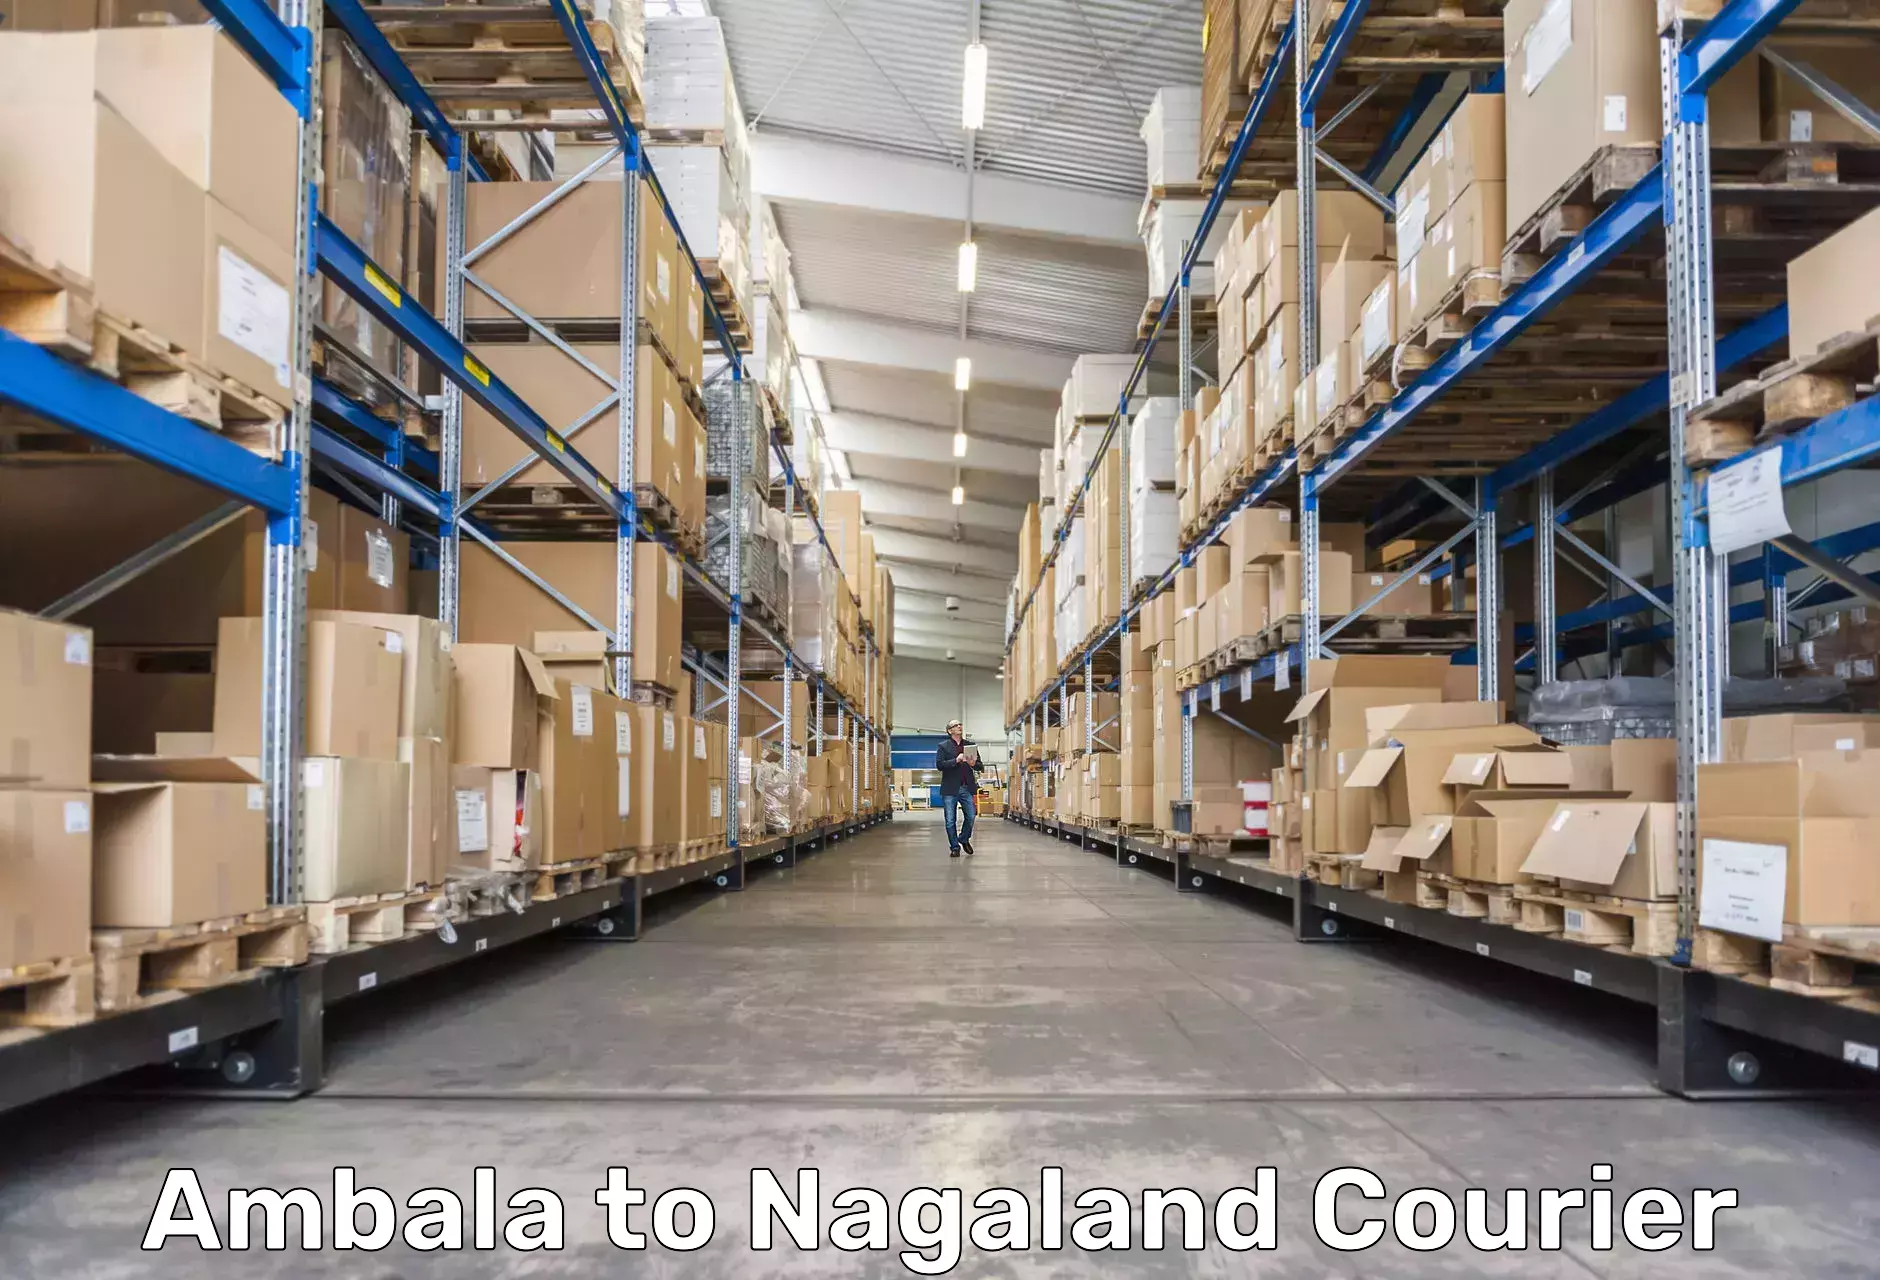 Nationwide delivery network Ambala to Mokokchung